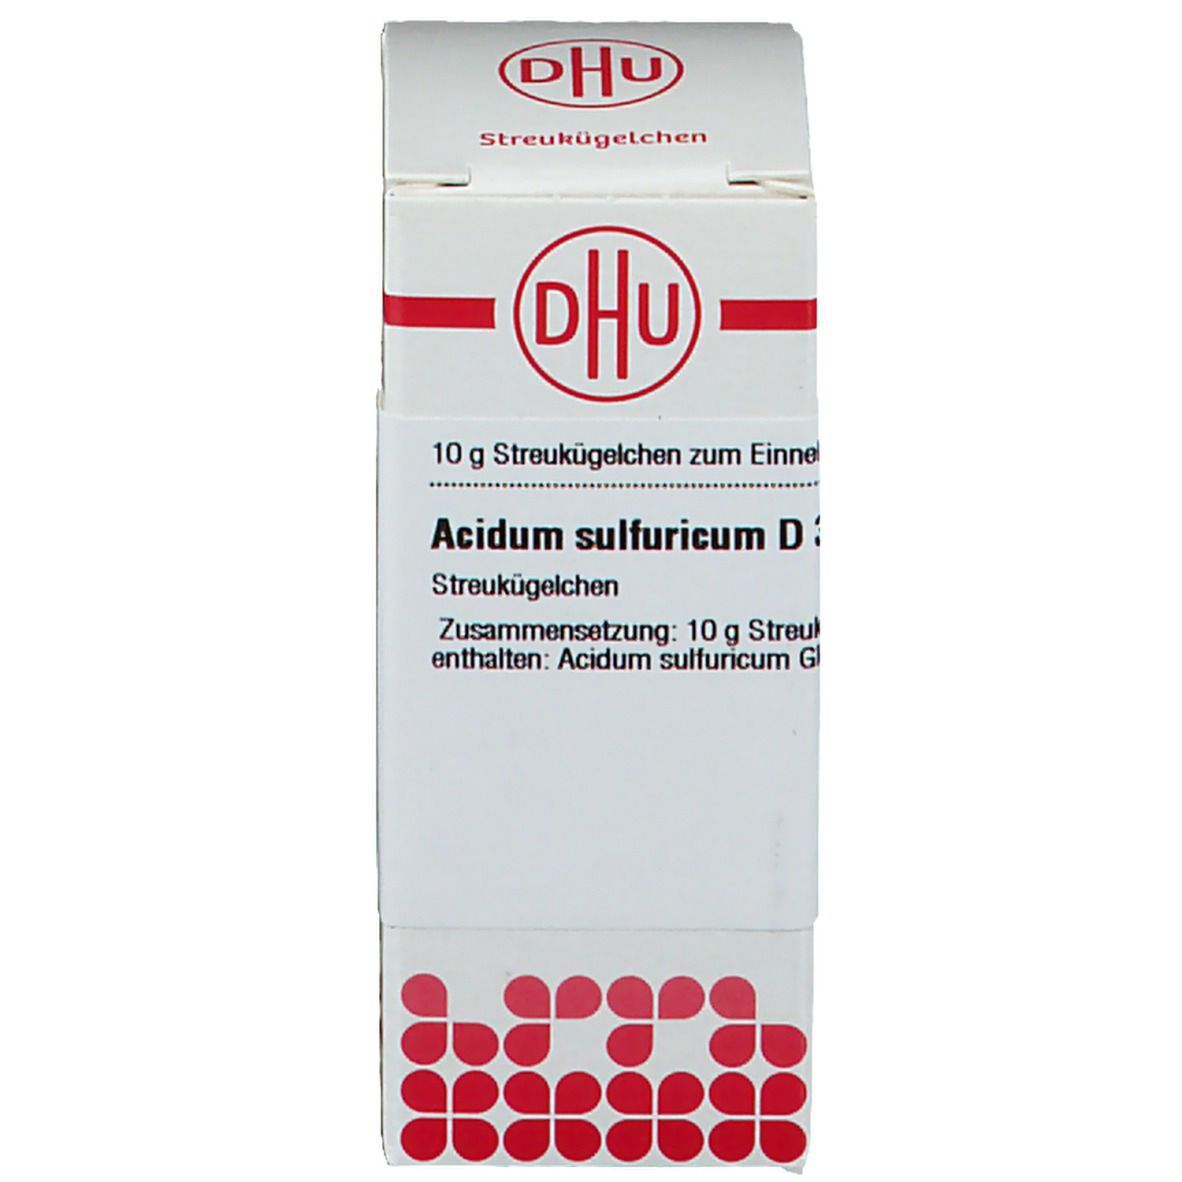 DHU Acidum Sulfuricum D30